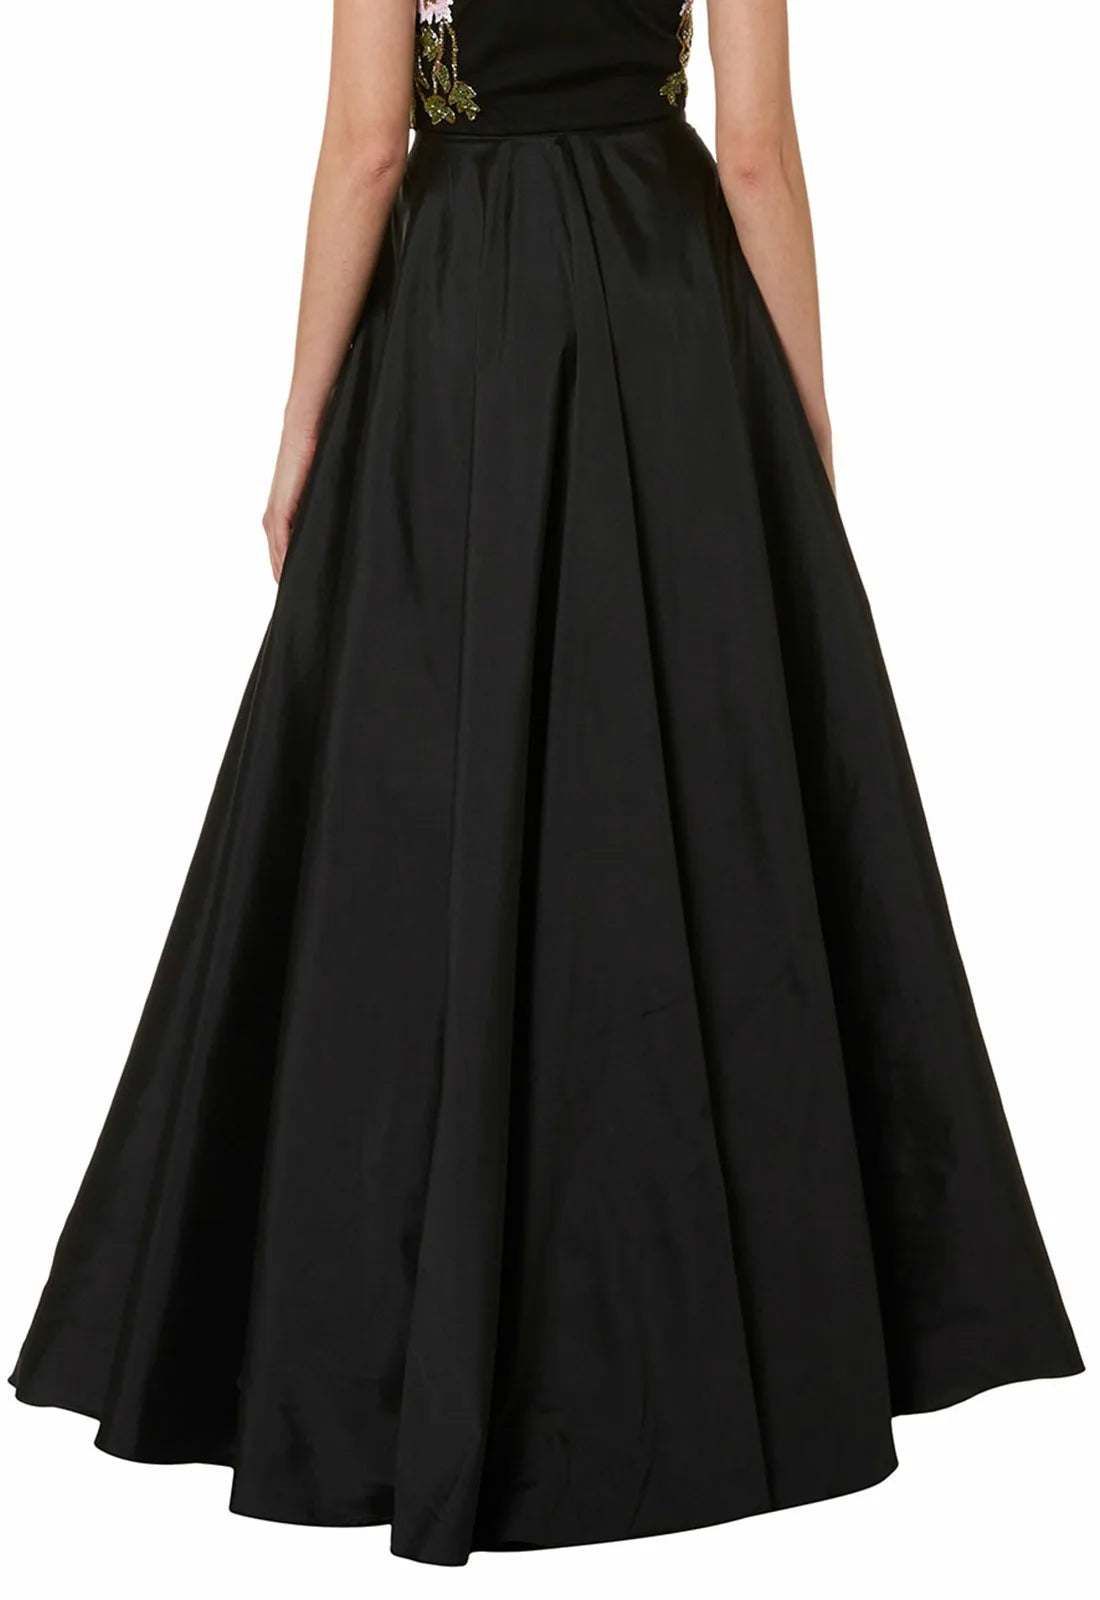 Raishma Taffeta Maxi Skirt in Black-10273